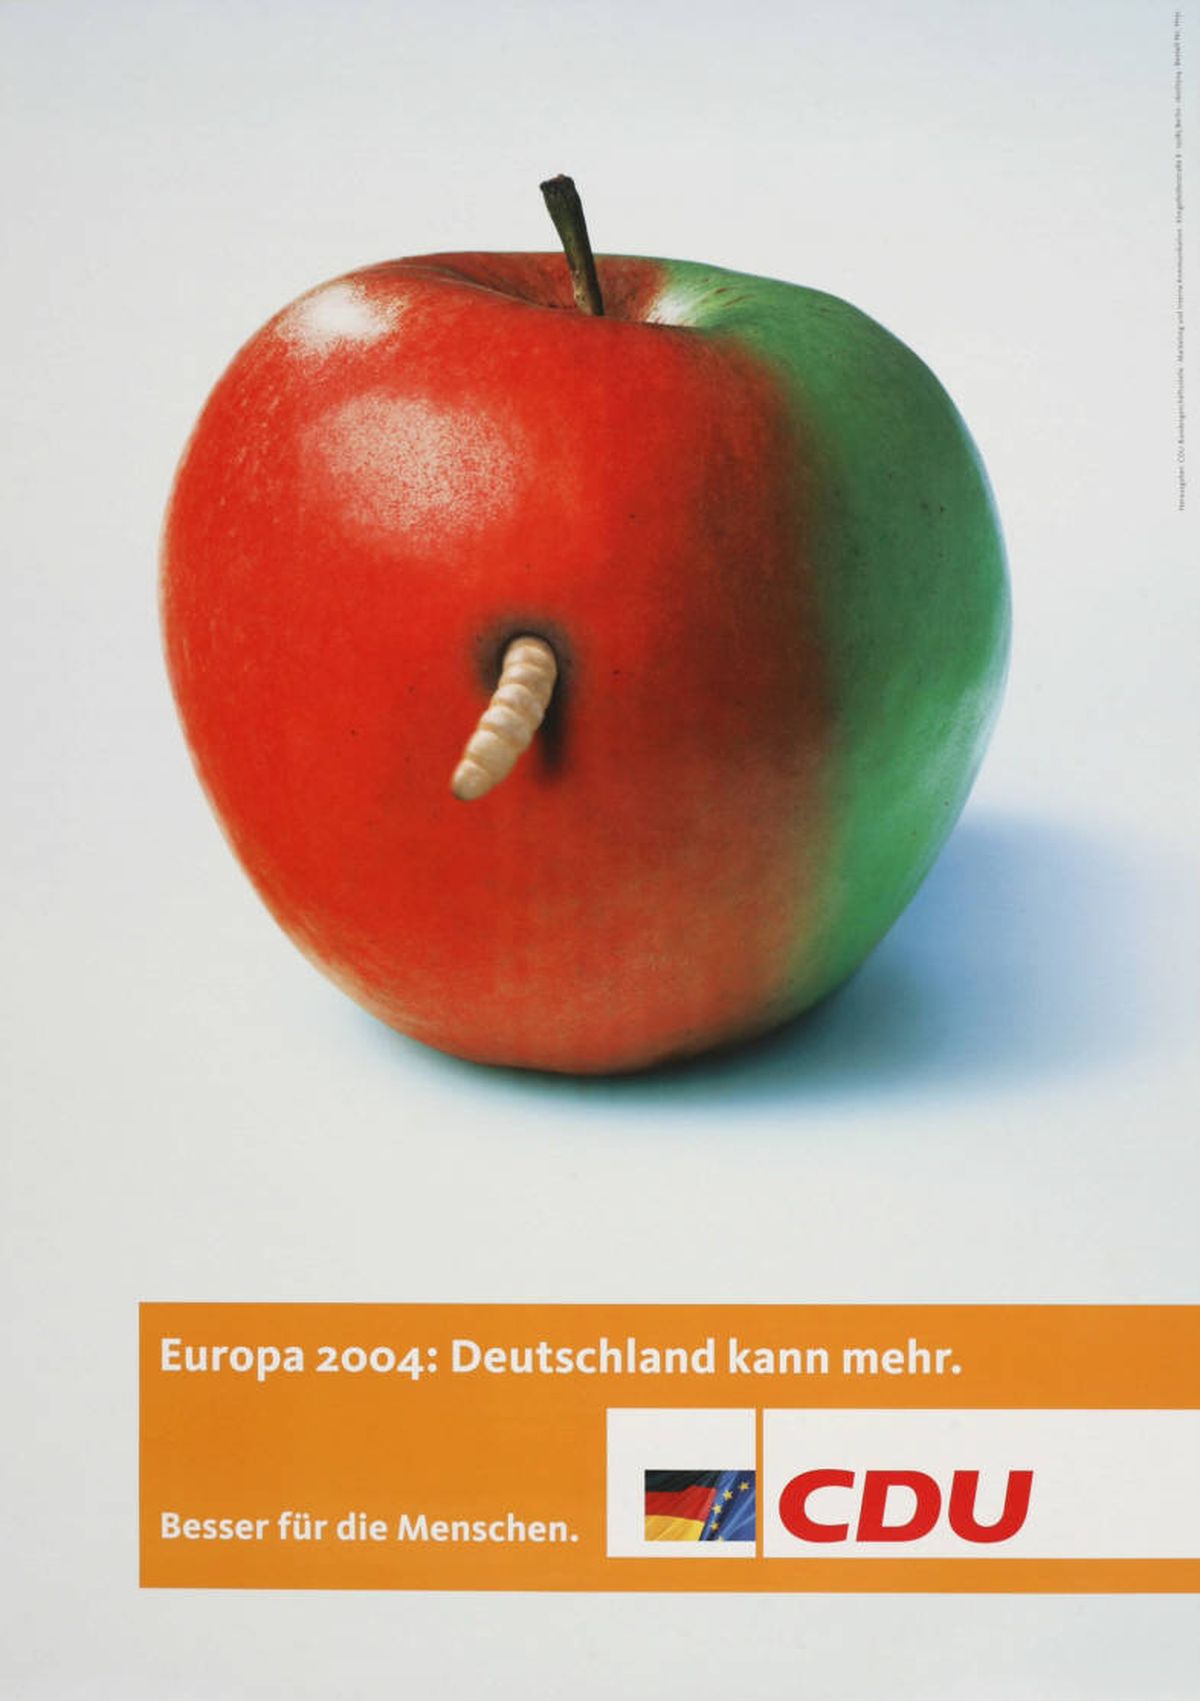 Накануне европейских выборов 2004 года в Германии тогдашние оппозиционные Христианские демократы (CDU) изобразили в своей рекламе правящую коалицию социал-демократов и «зеленых» в виде гнилого яблока.